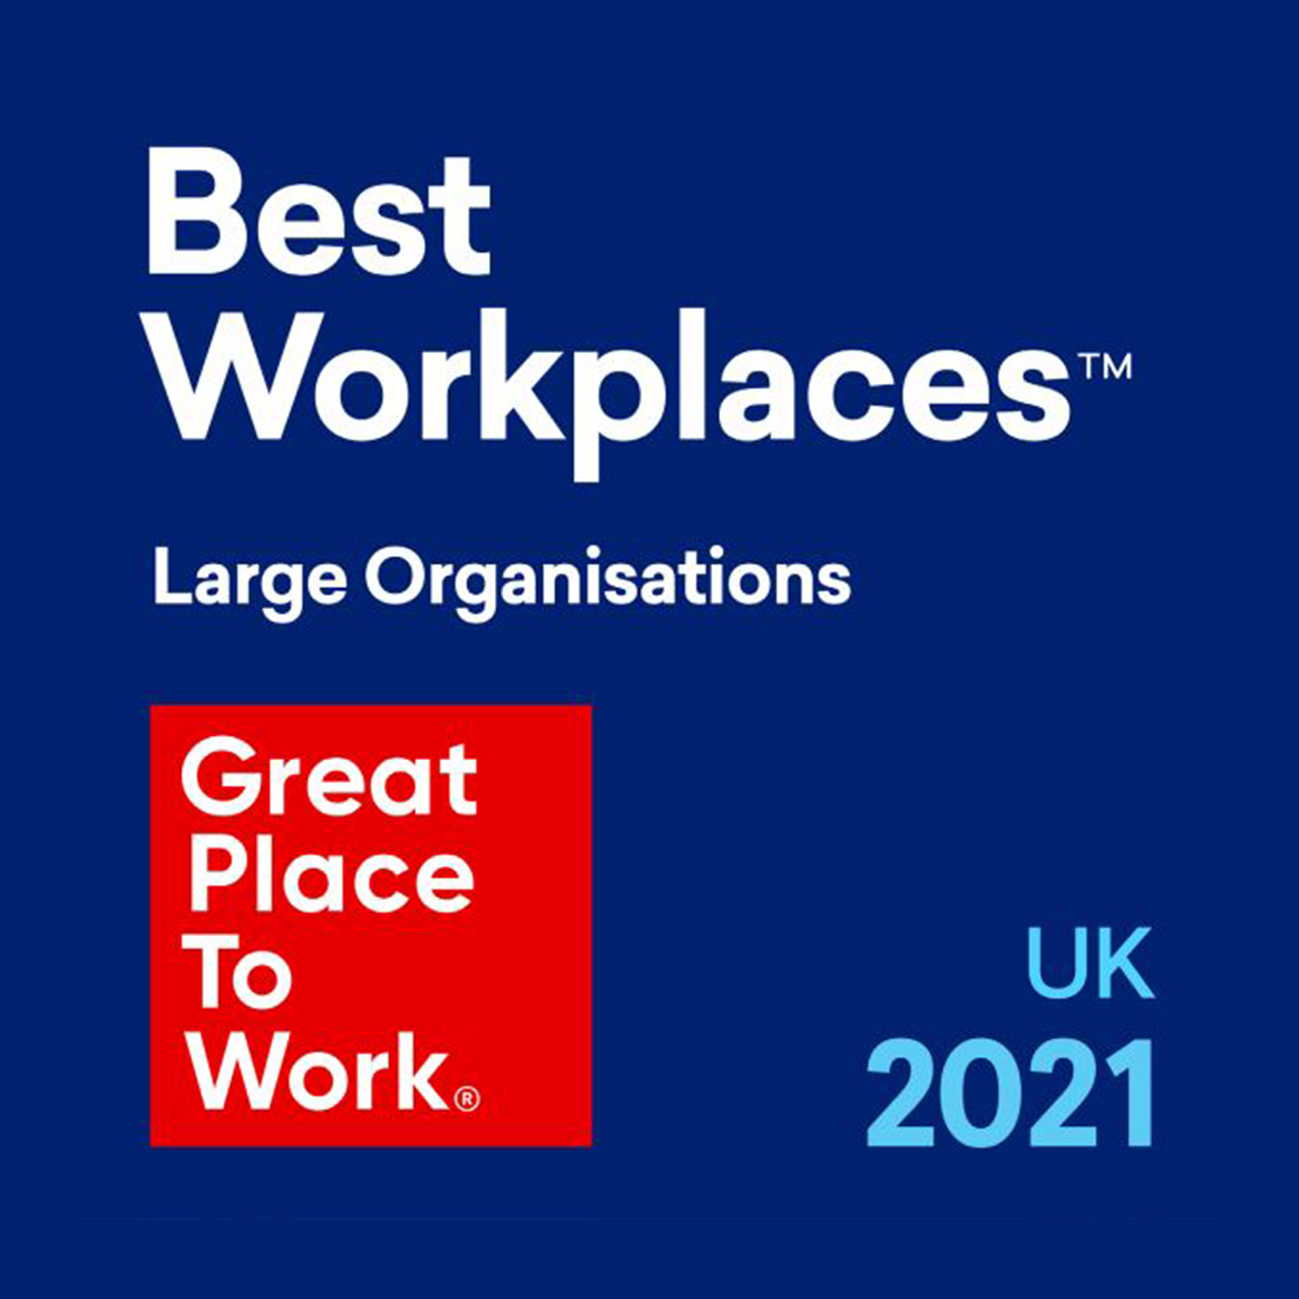 Webbs wins UK Best Workplace™ 2021 award